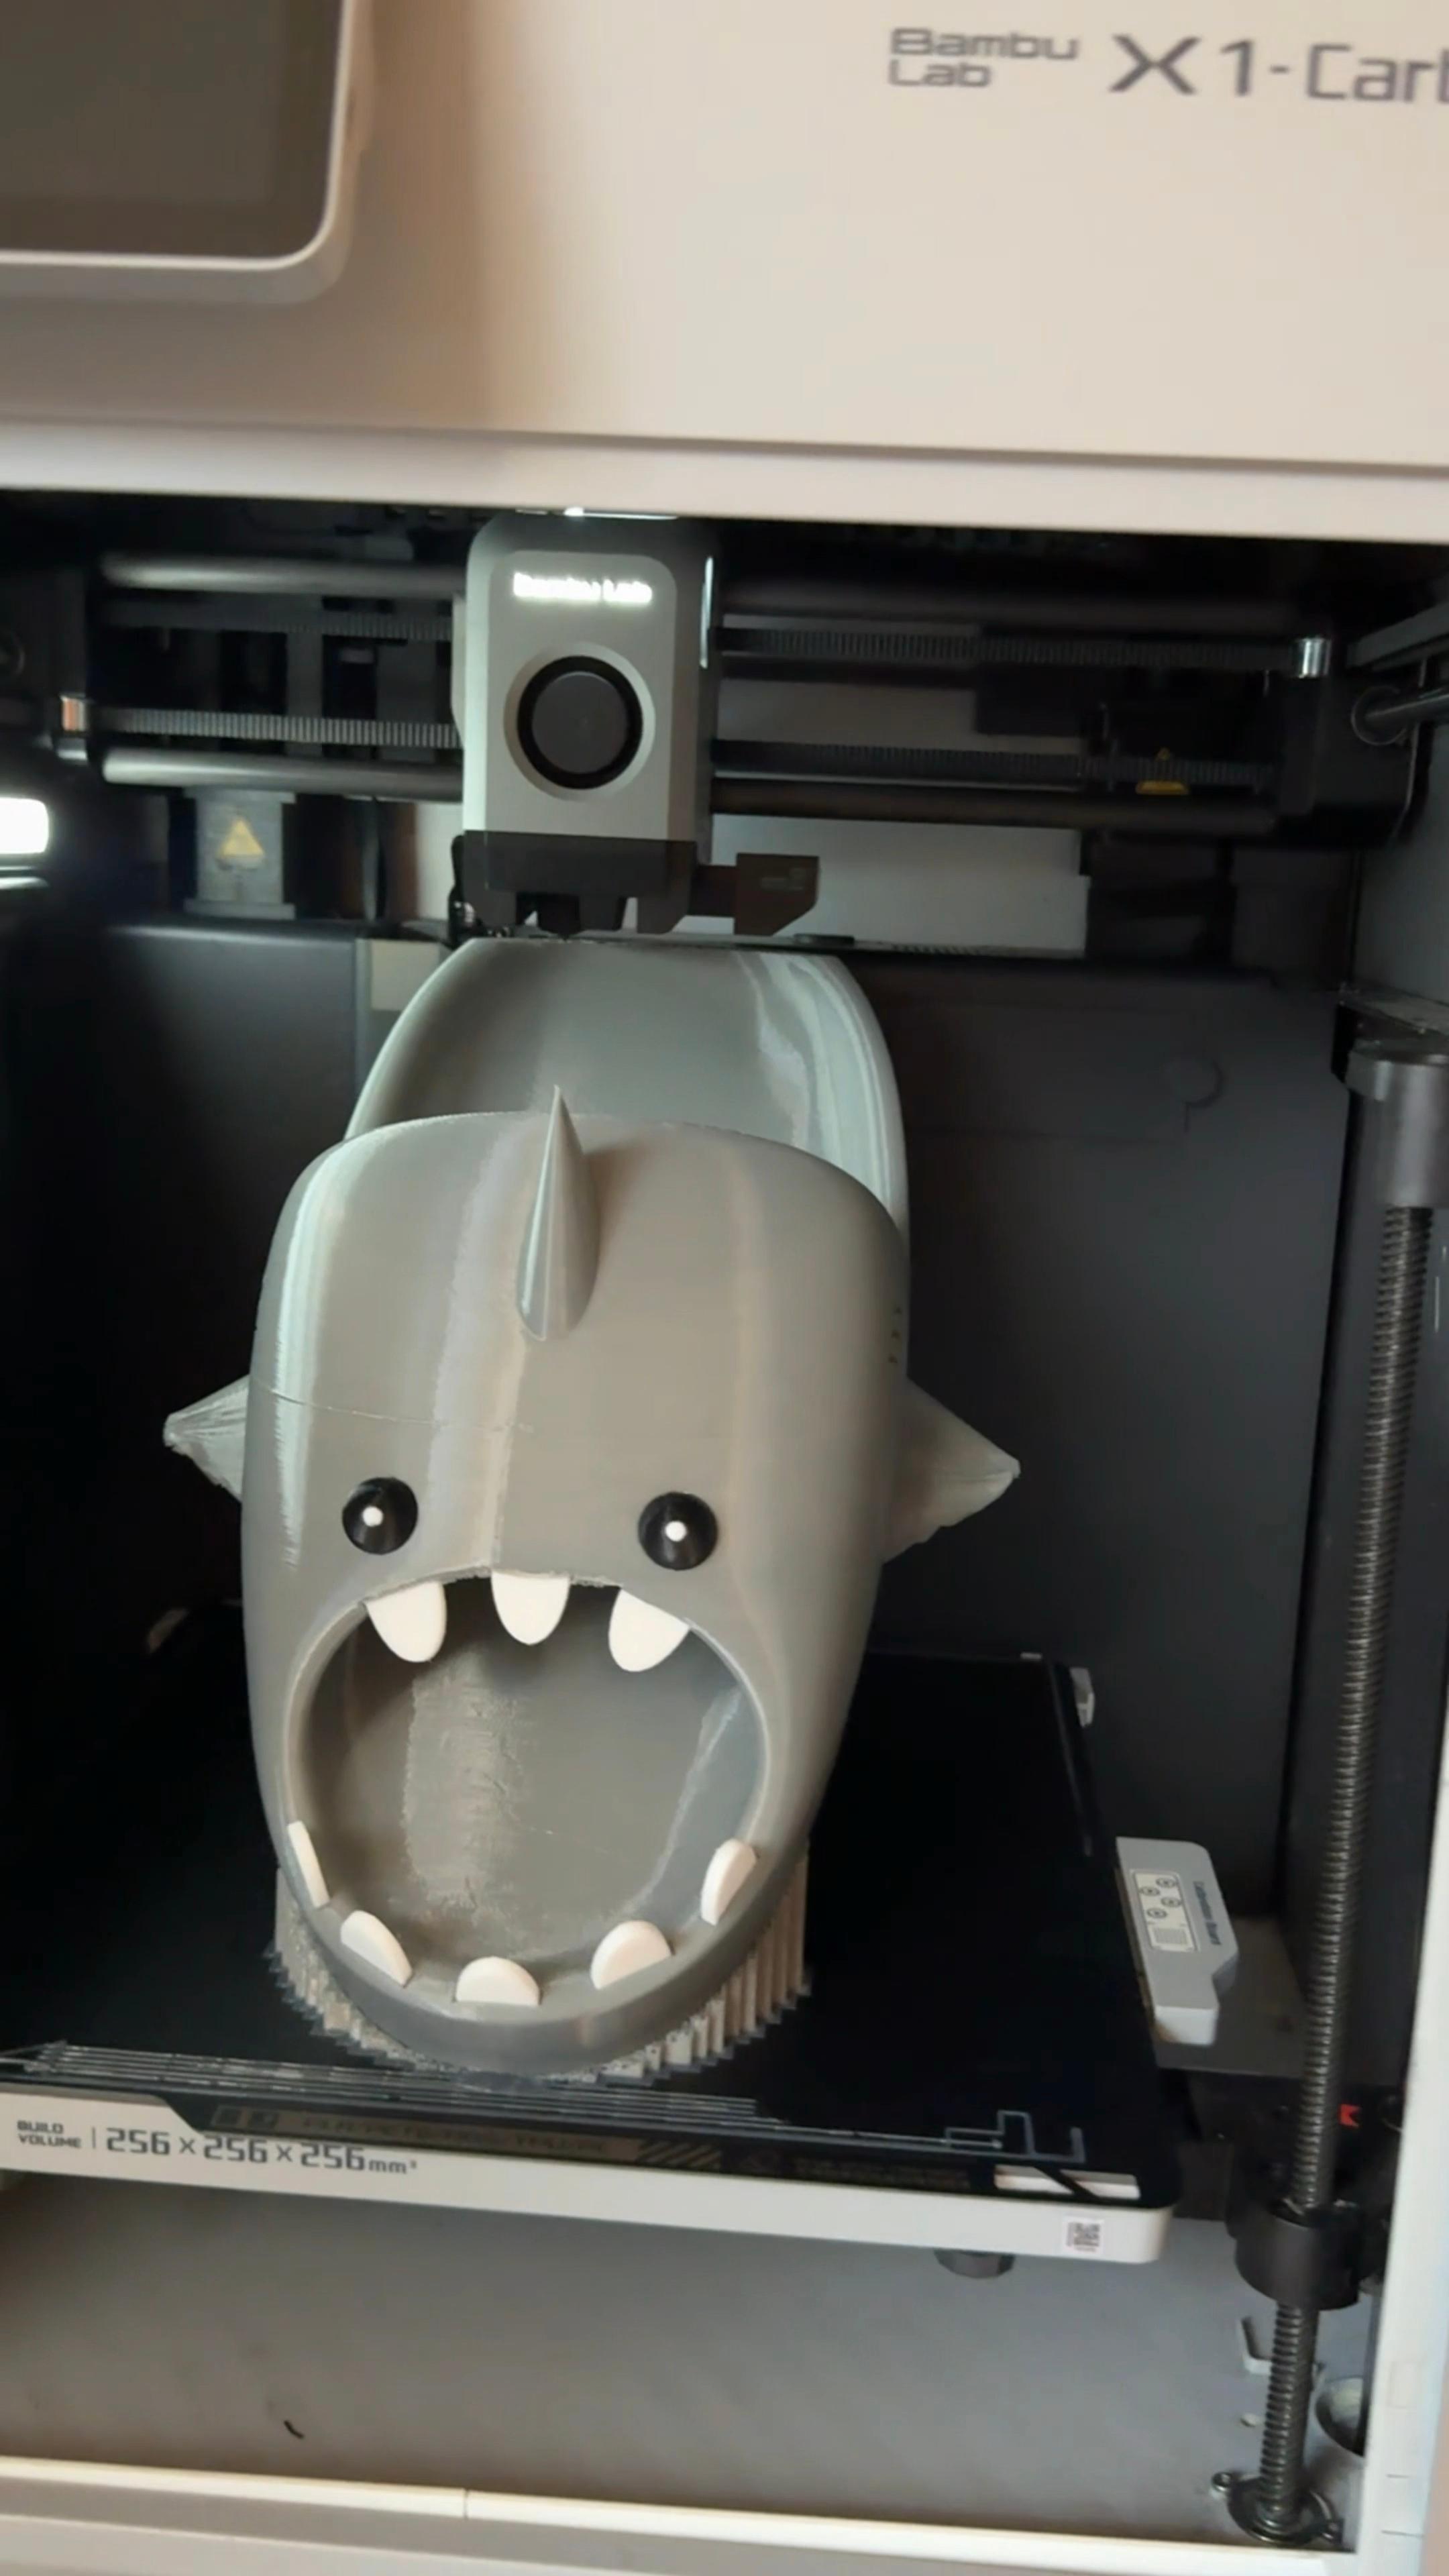 Mad Shark slides 3d model